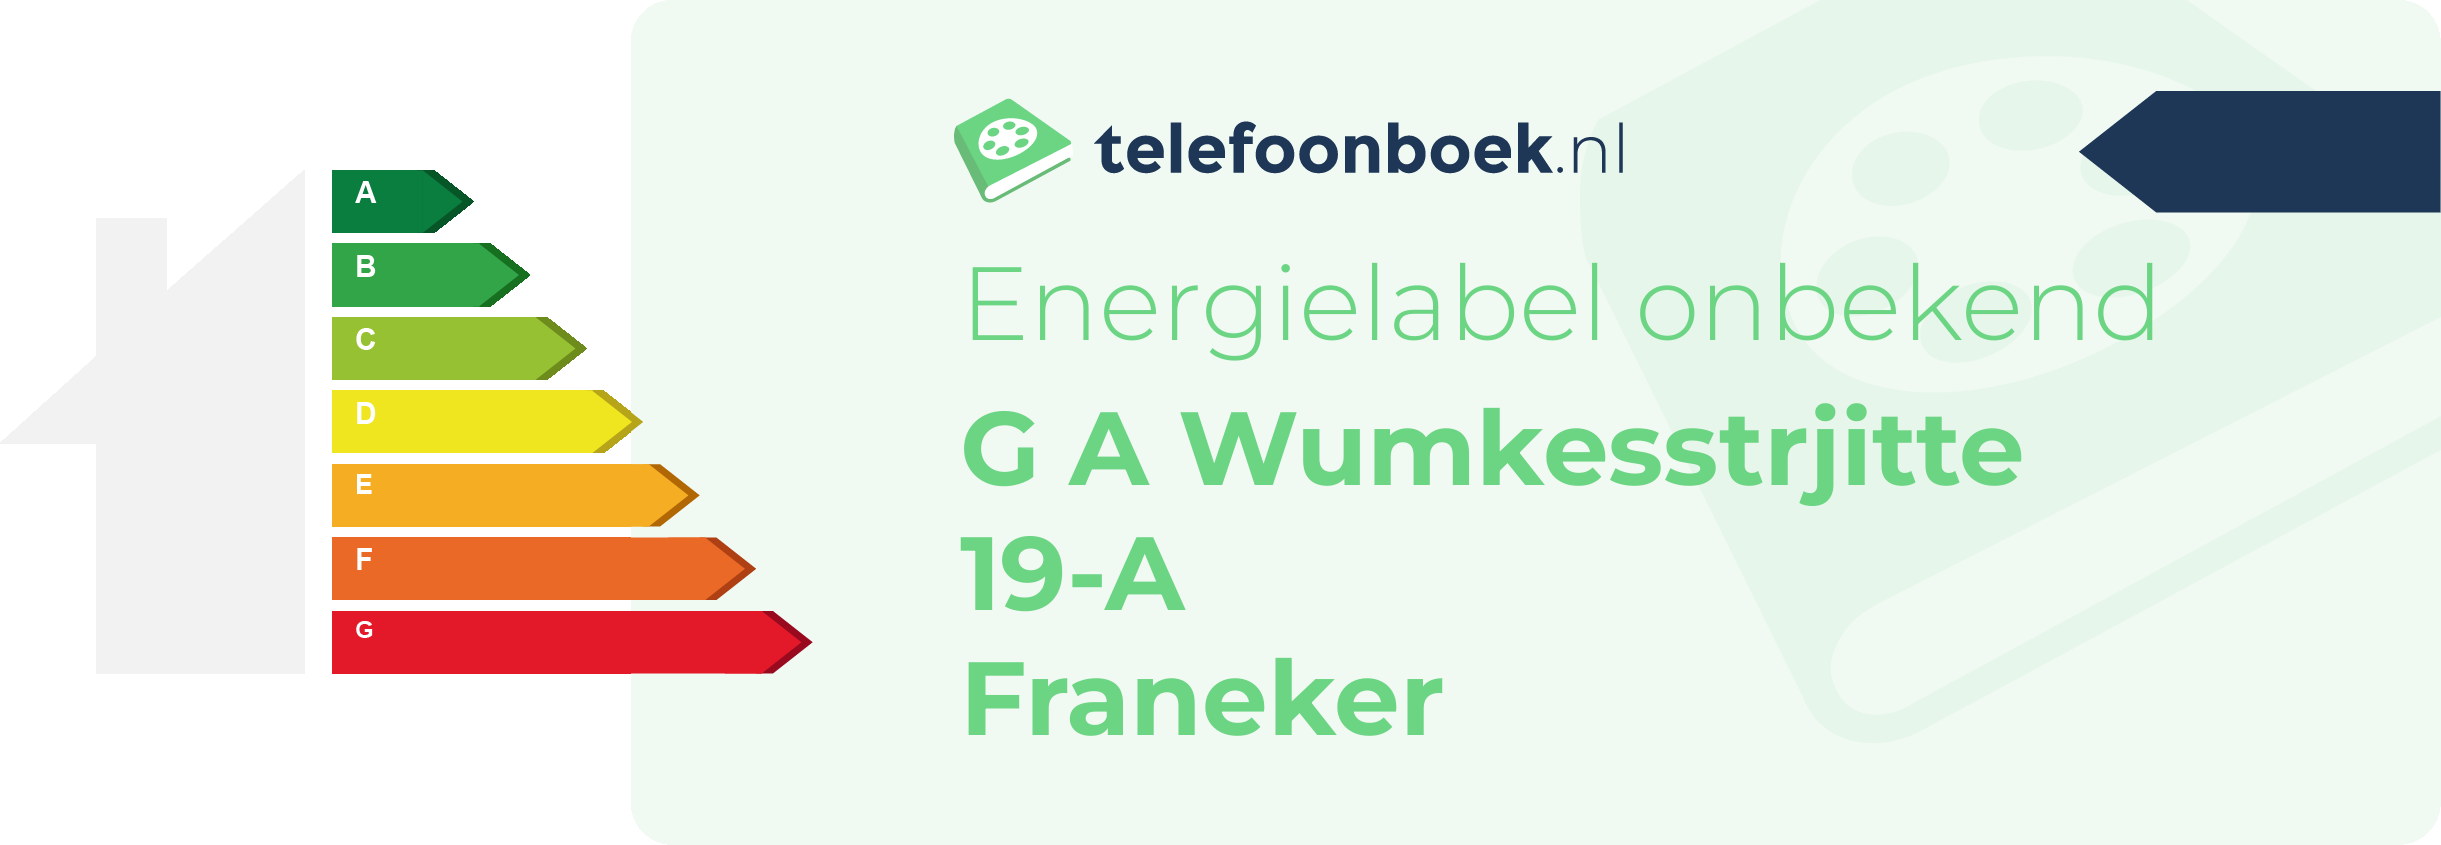 Energielabel G A Wumkesstrjitte 19-A Franeker